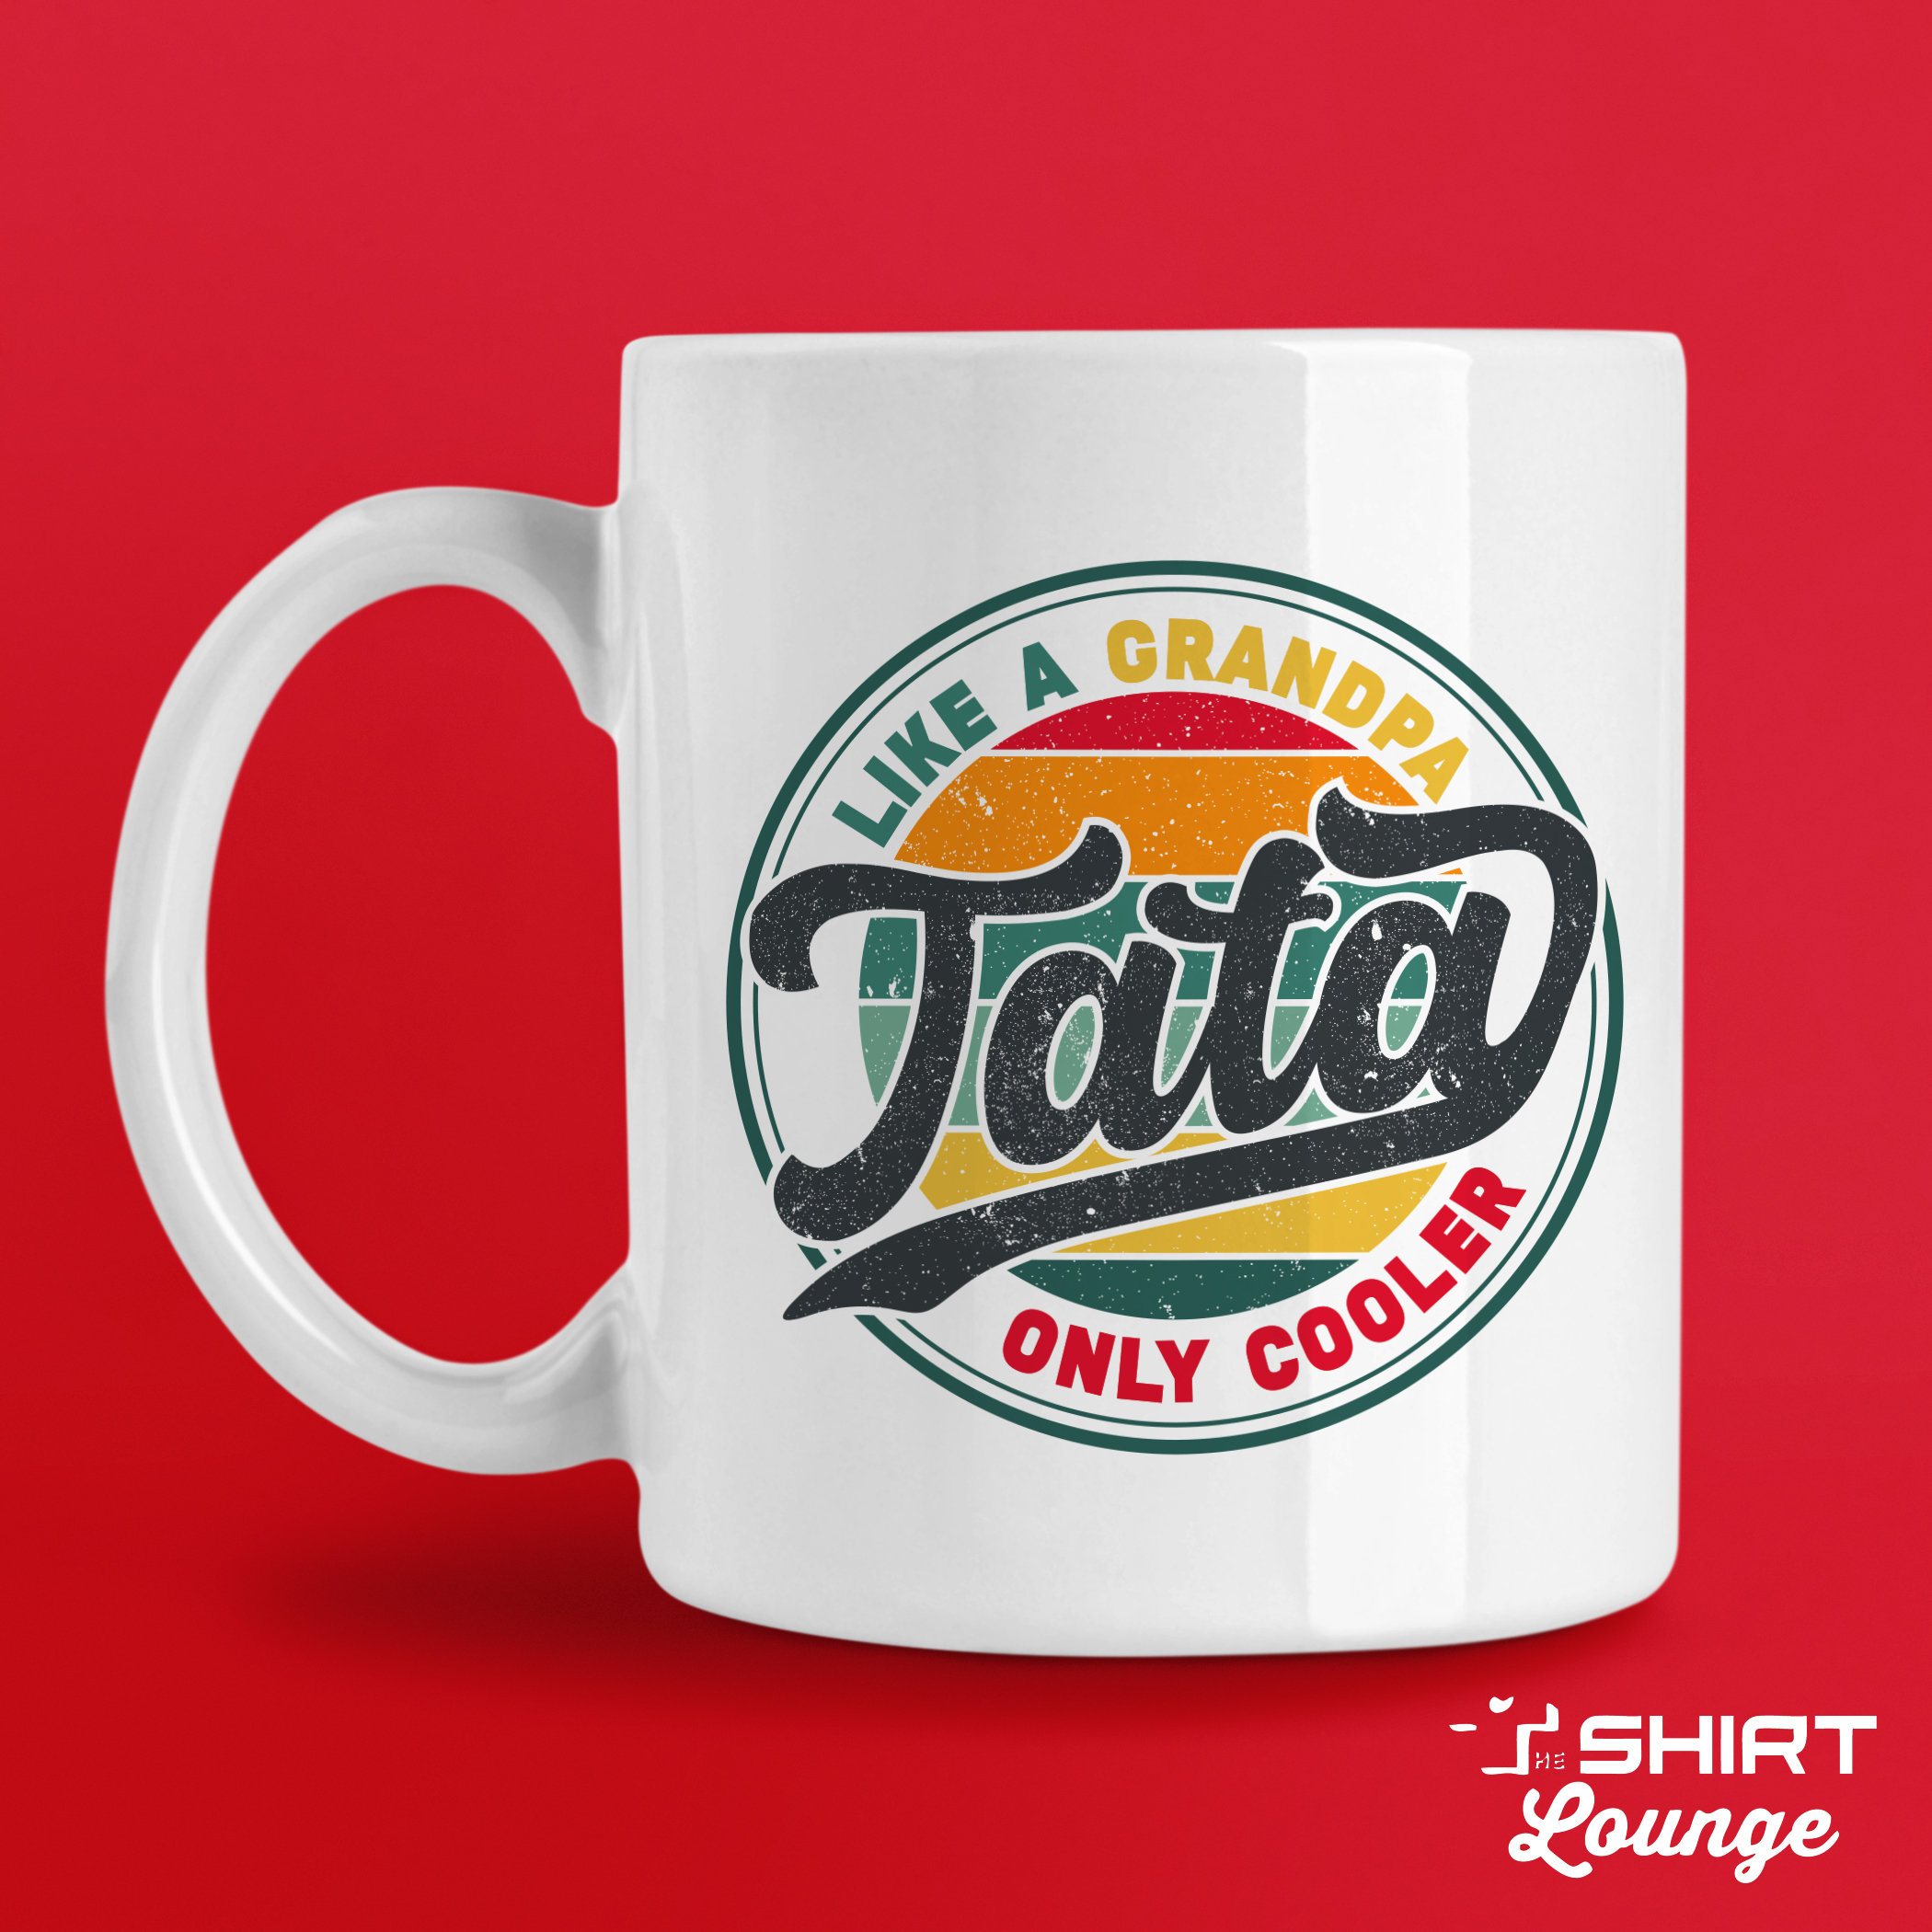 Cadeau pour Tata pas cher - Mug Tata Cool rigolo